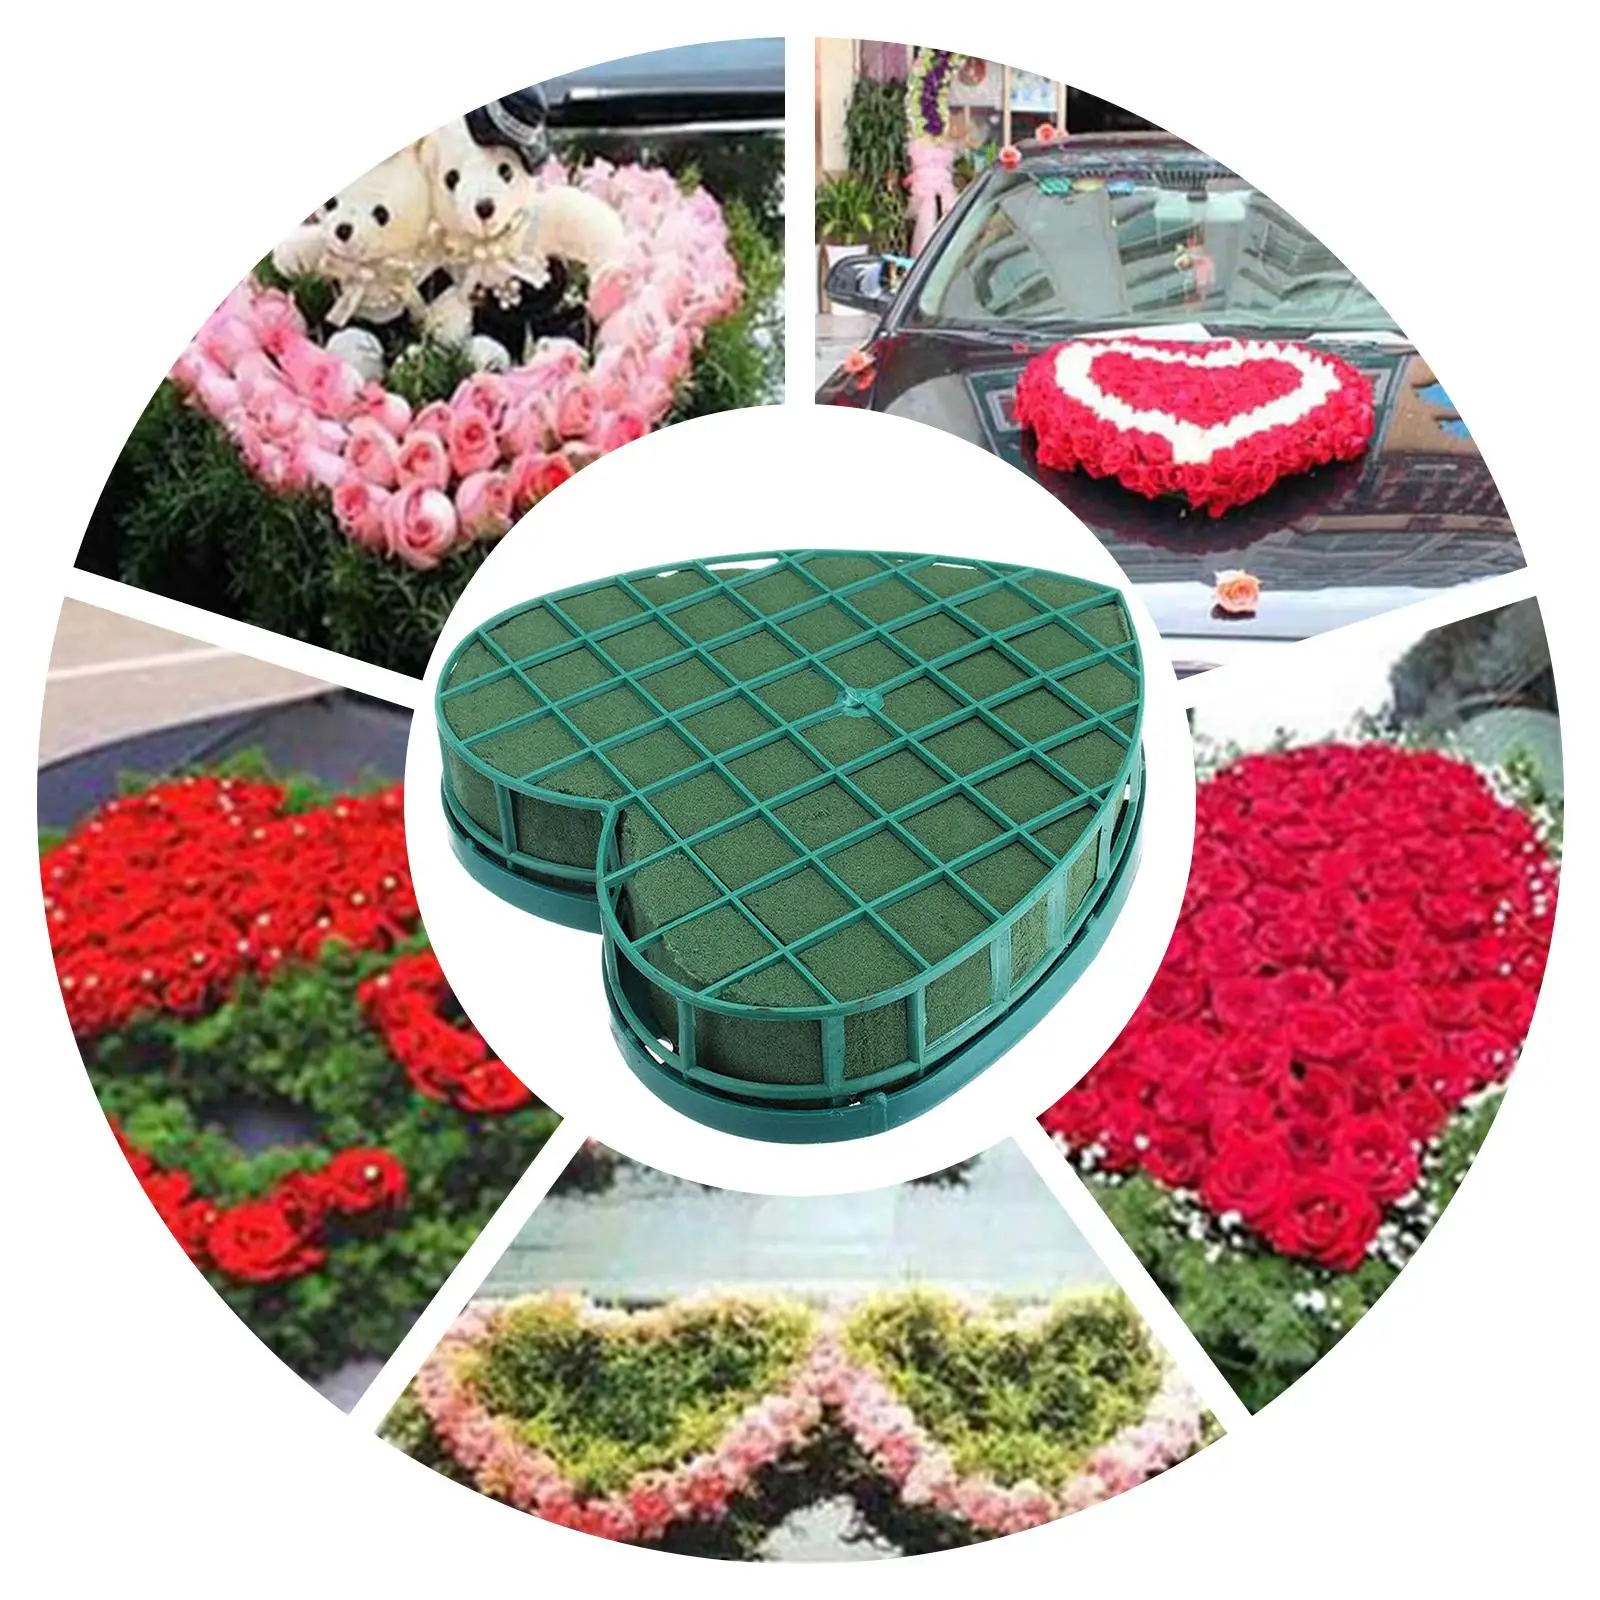 Heart Shaped Floral Foam Artificial Floral Arrangements Foams Base for Decor